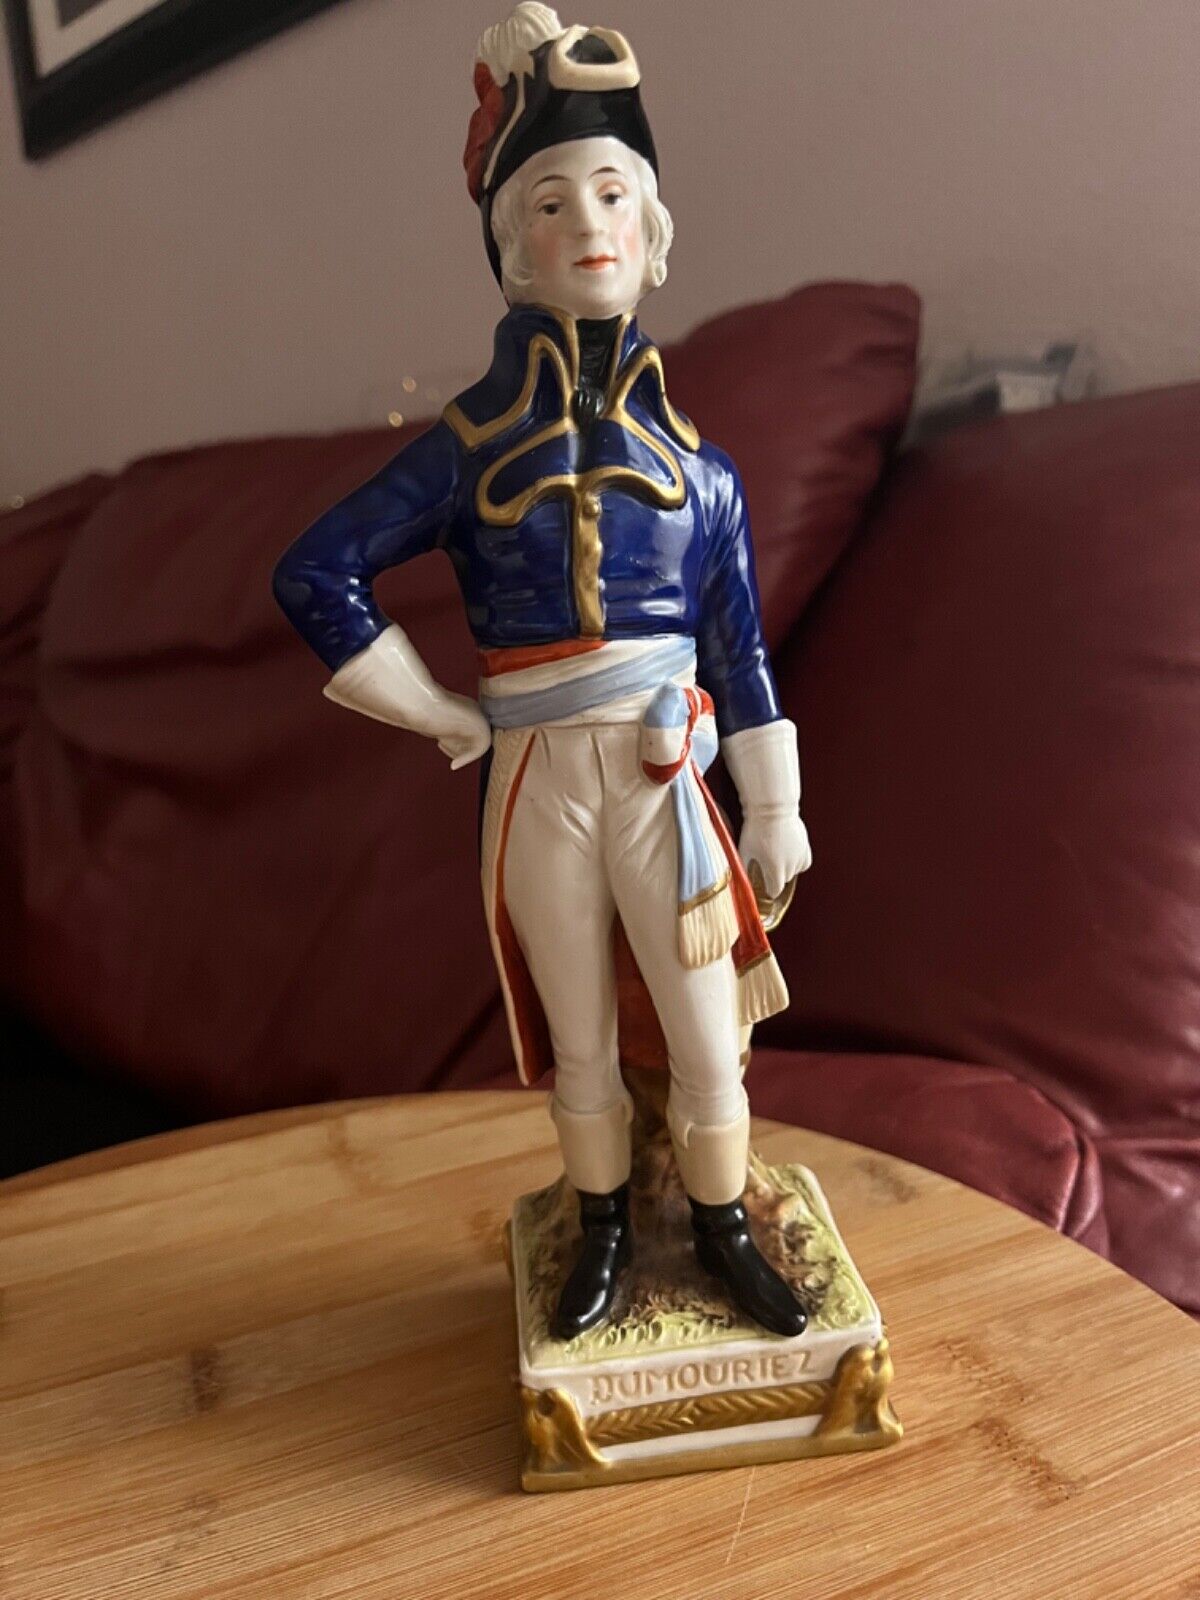 Scheibe alsbach German porcelain napoleon officer statue figurine dumouriez